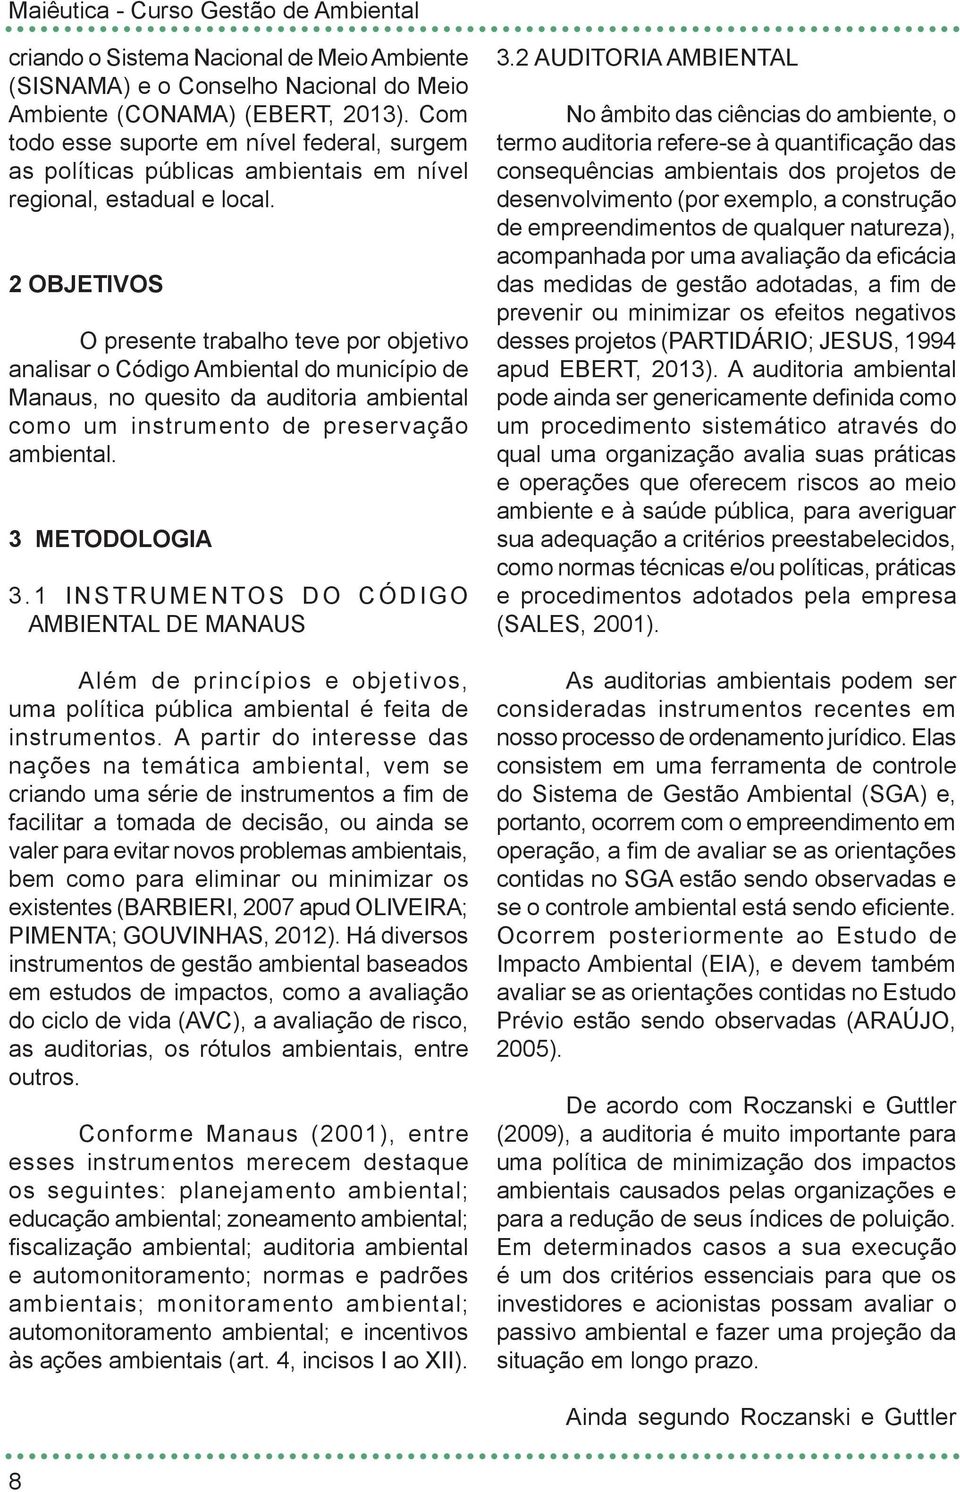 2 OBJETIVOS O presente trabalho teve por objetivo analisar o Código Ambiental do município de Manaus, no quesito da auditoria ambiental como um instrumento de preservação ambiental. 3 METODOLOGIA 3.